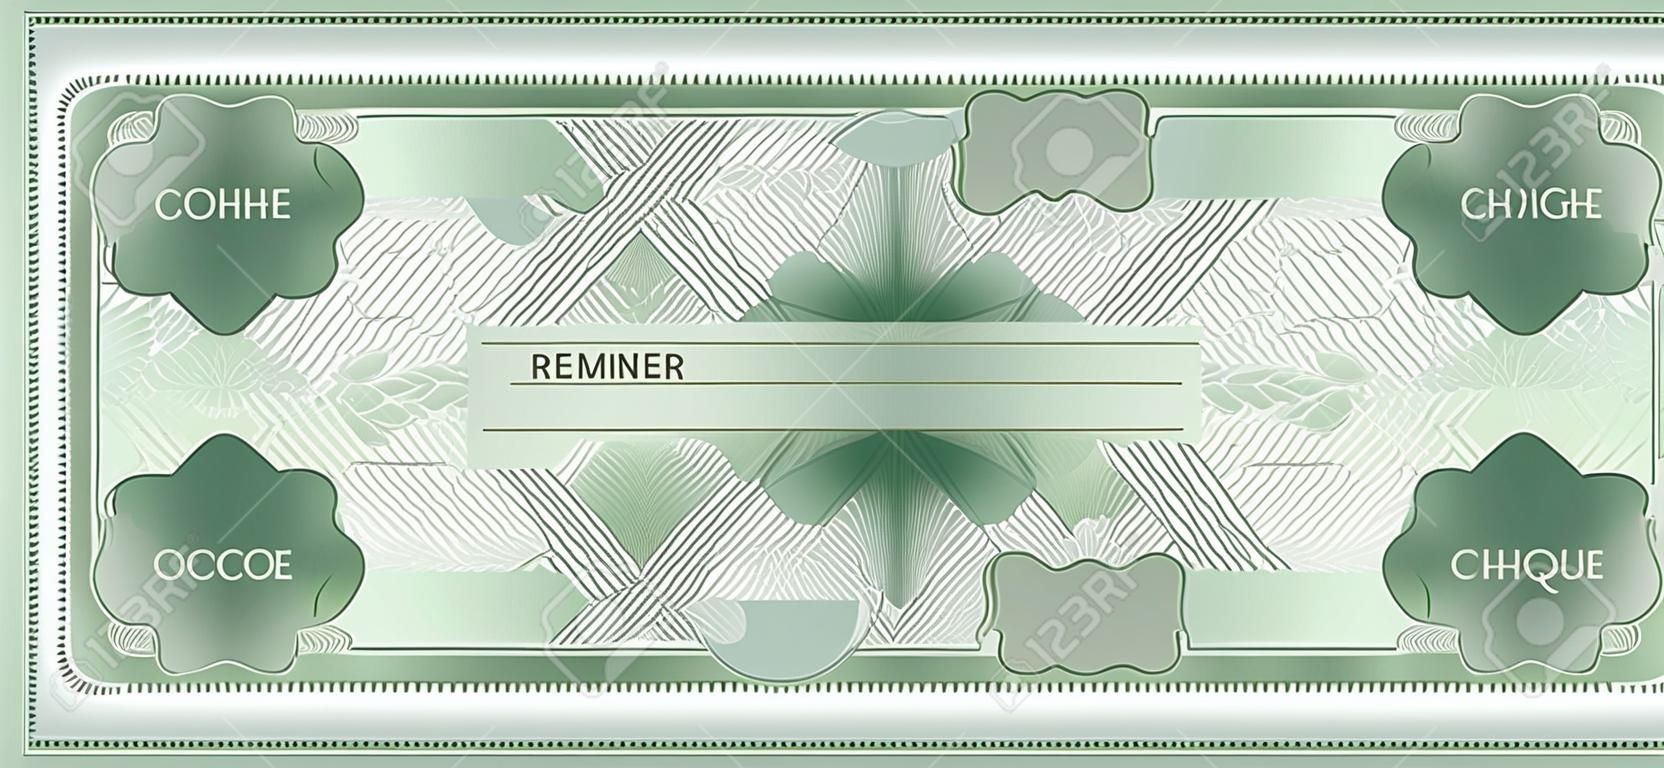 小切手、小切手(小切手帳テンプレート)。抽象的な花の透かし、ボーダーとギロチェパターン。紙幣、マネーデザイン、通貨、紙幣、伝票、ギフト券、マネークーポンのための緑の背景